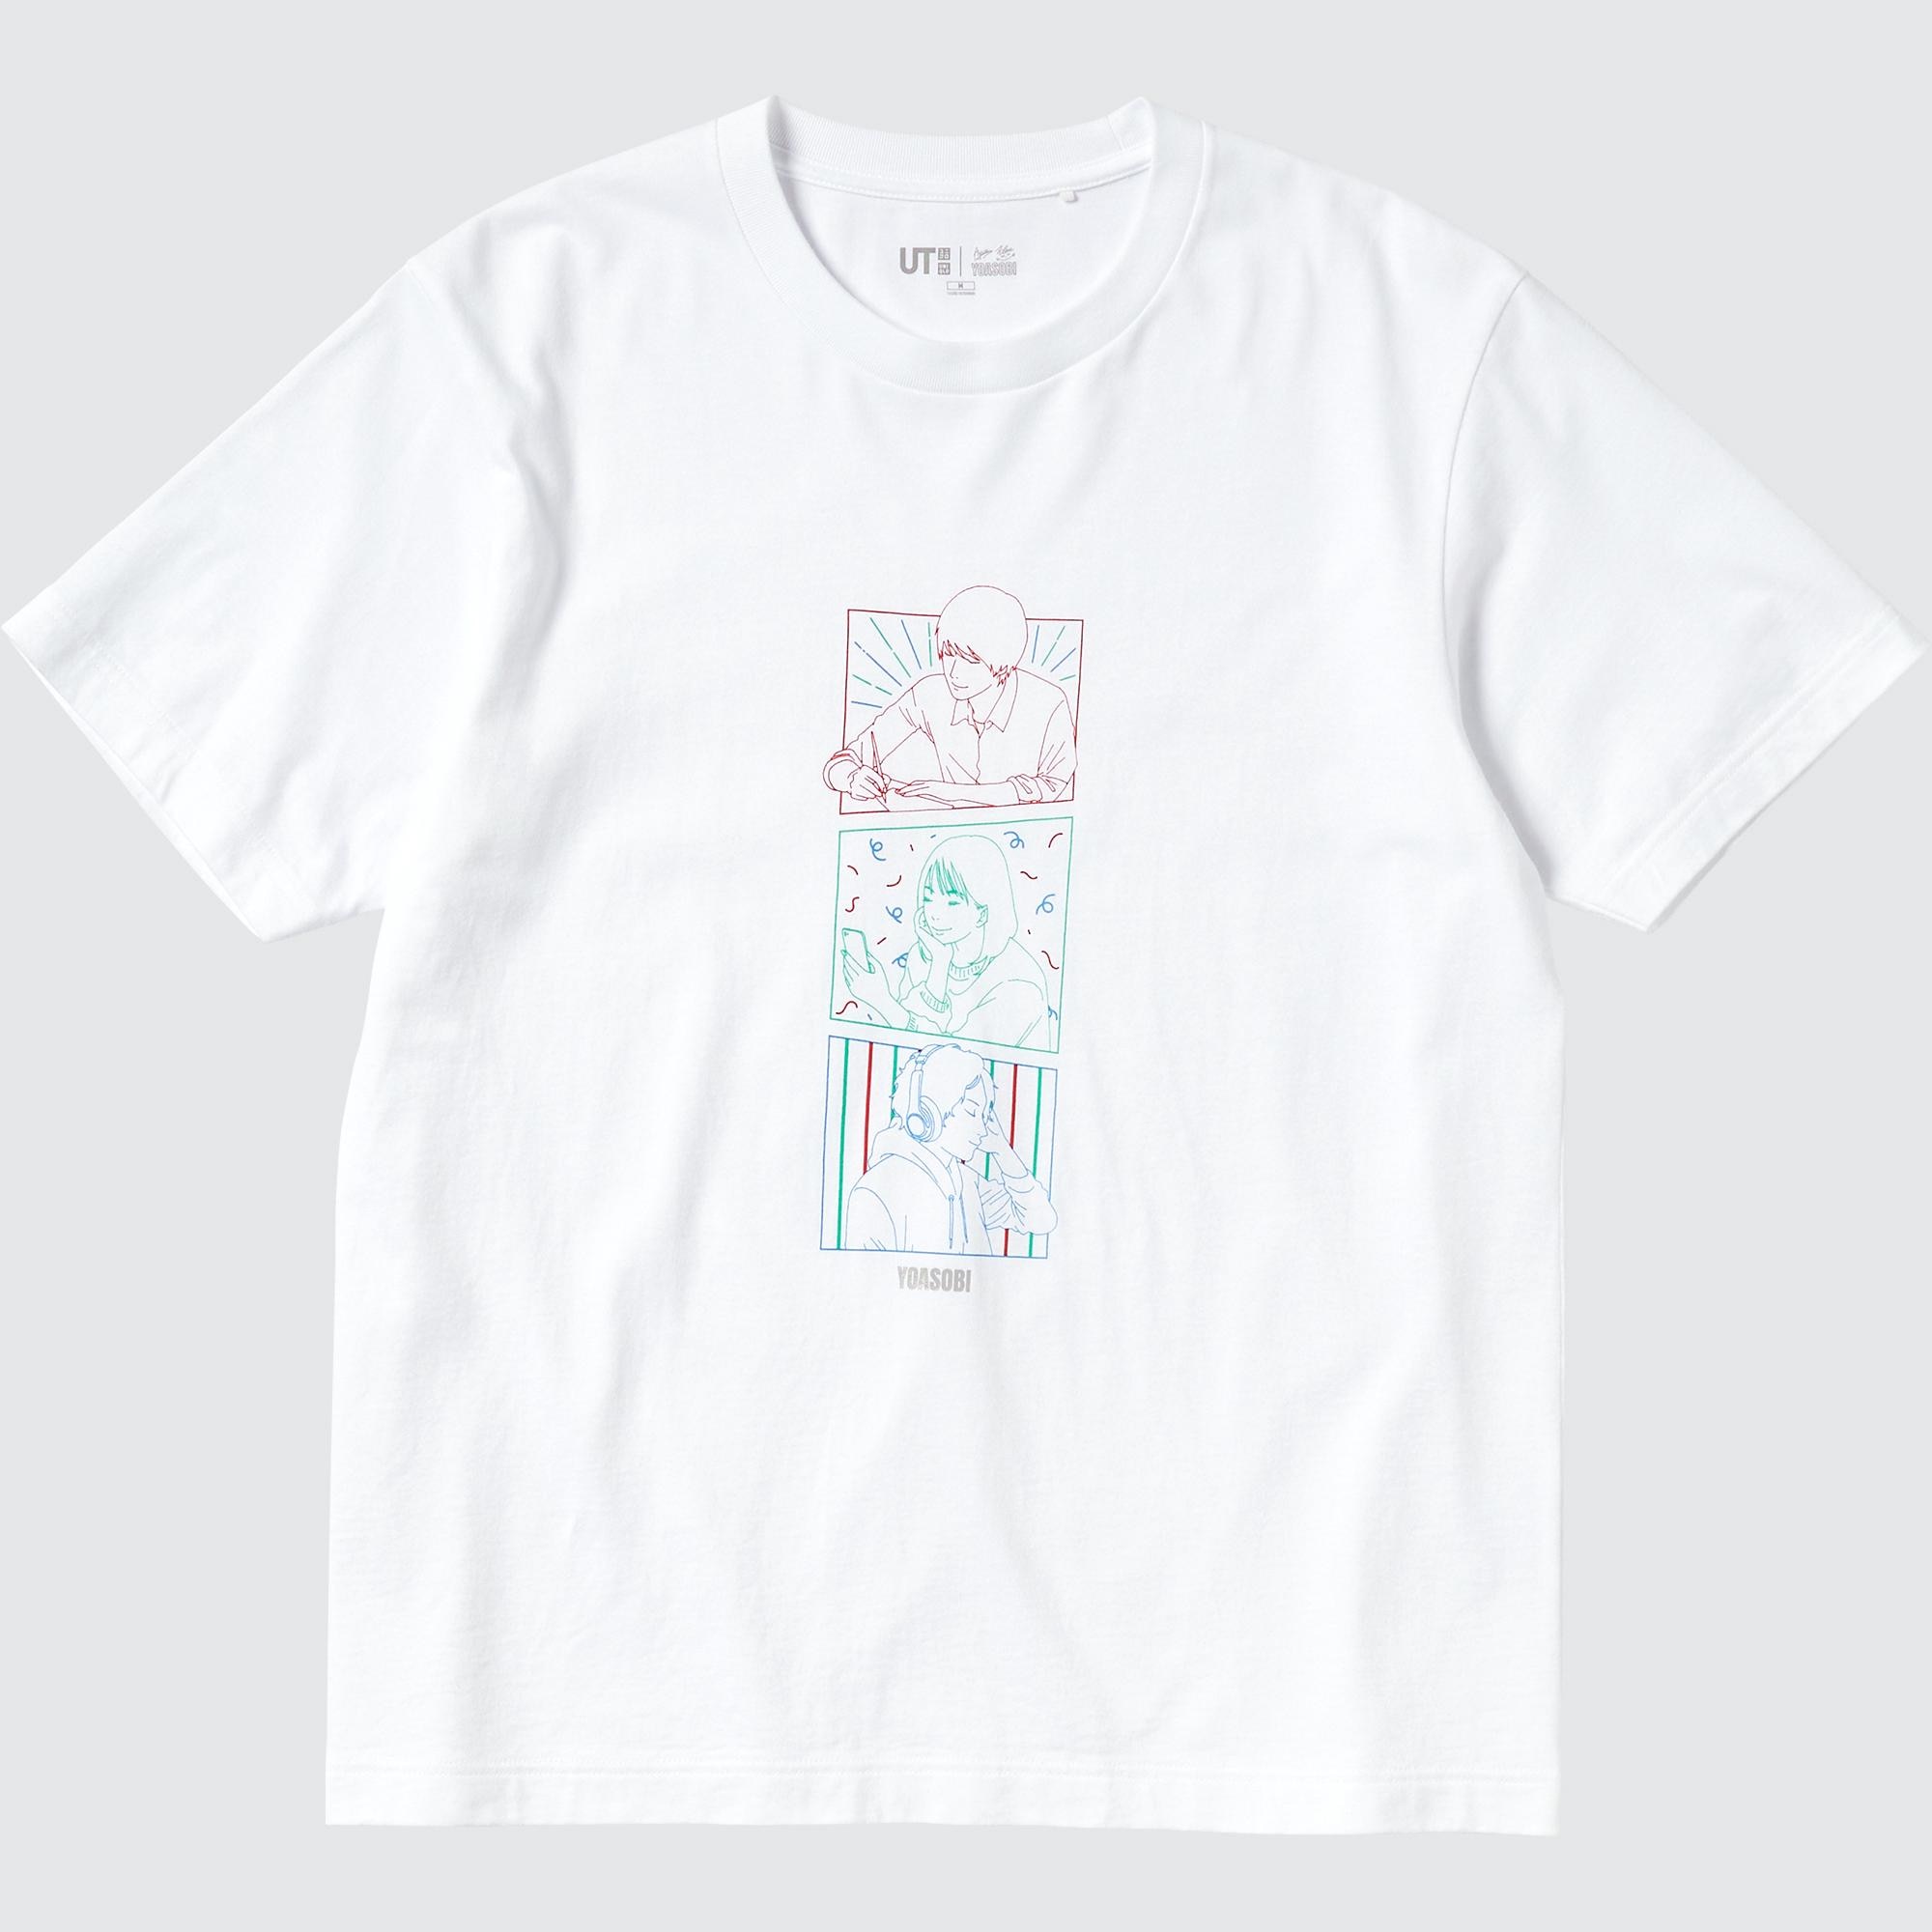 ユニクロ x YOASOBI 半袖 Tシャツ サイズ 3XL - Tシャツ/カットソー